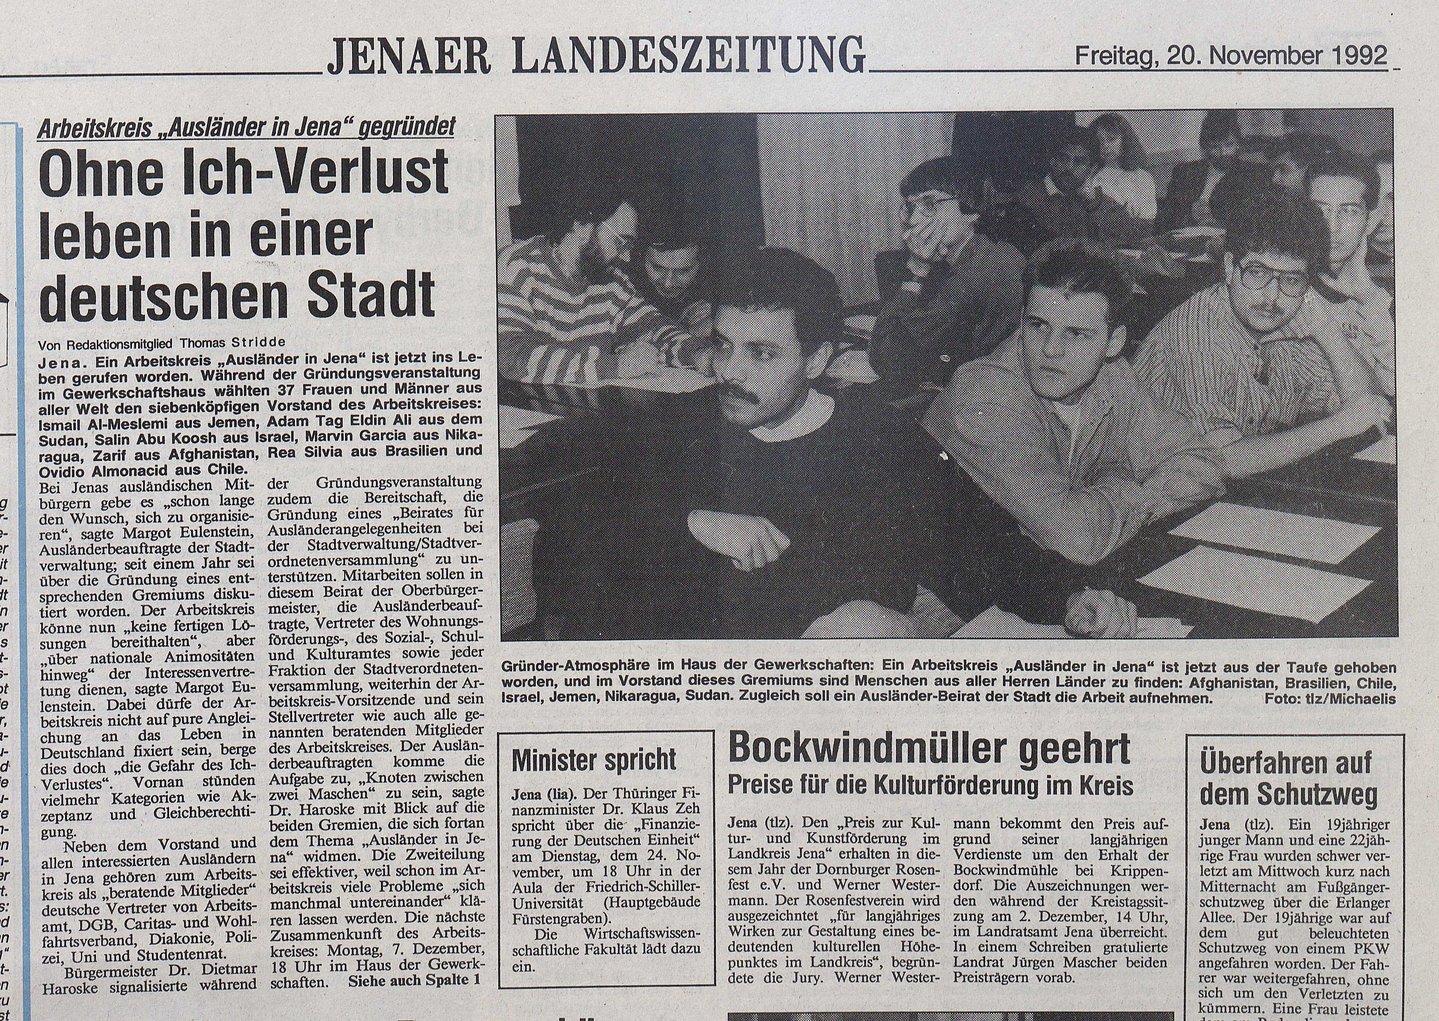 Thüringische Landeszeitung (TLZ), 20. November 1992